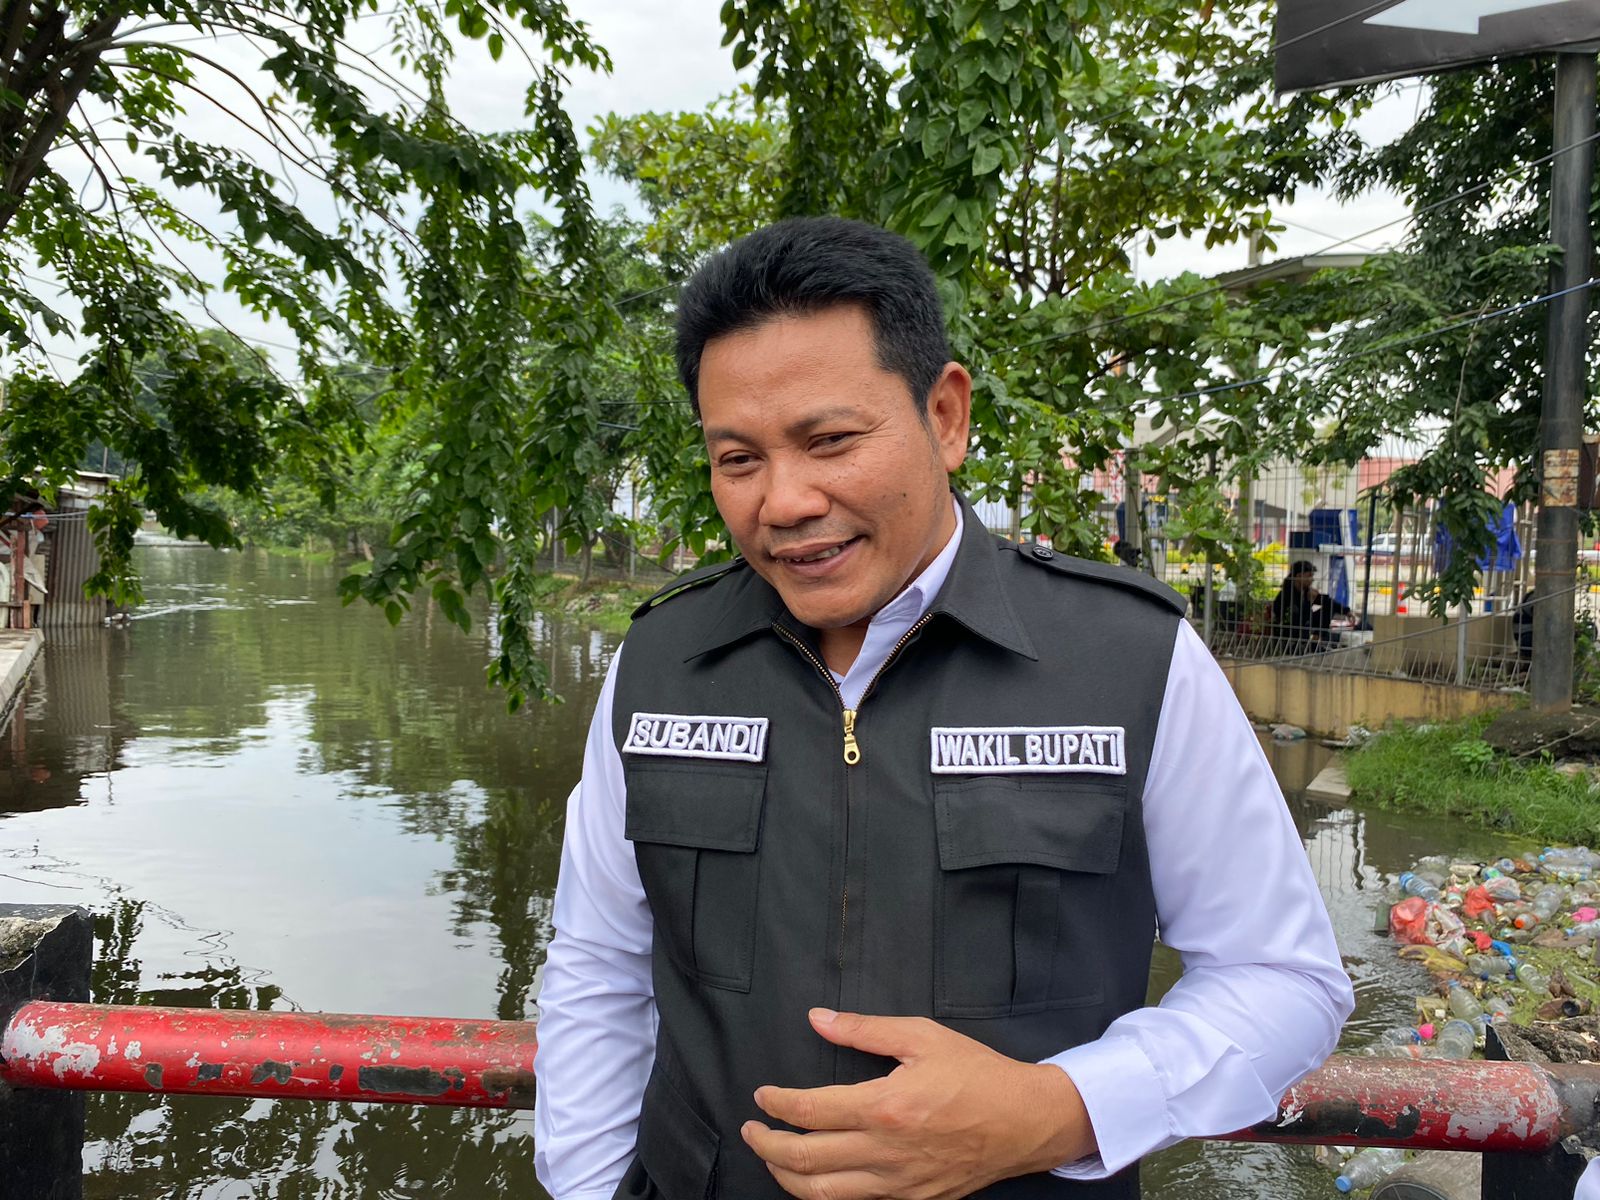 Wakil gubernur mengaitkan genangan air di Varu Sidorjo dengan sungai yang dangkal